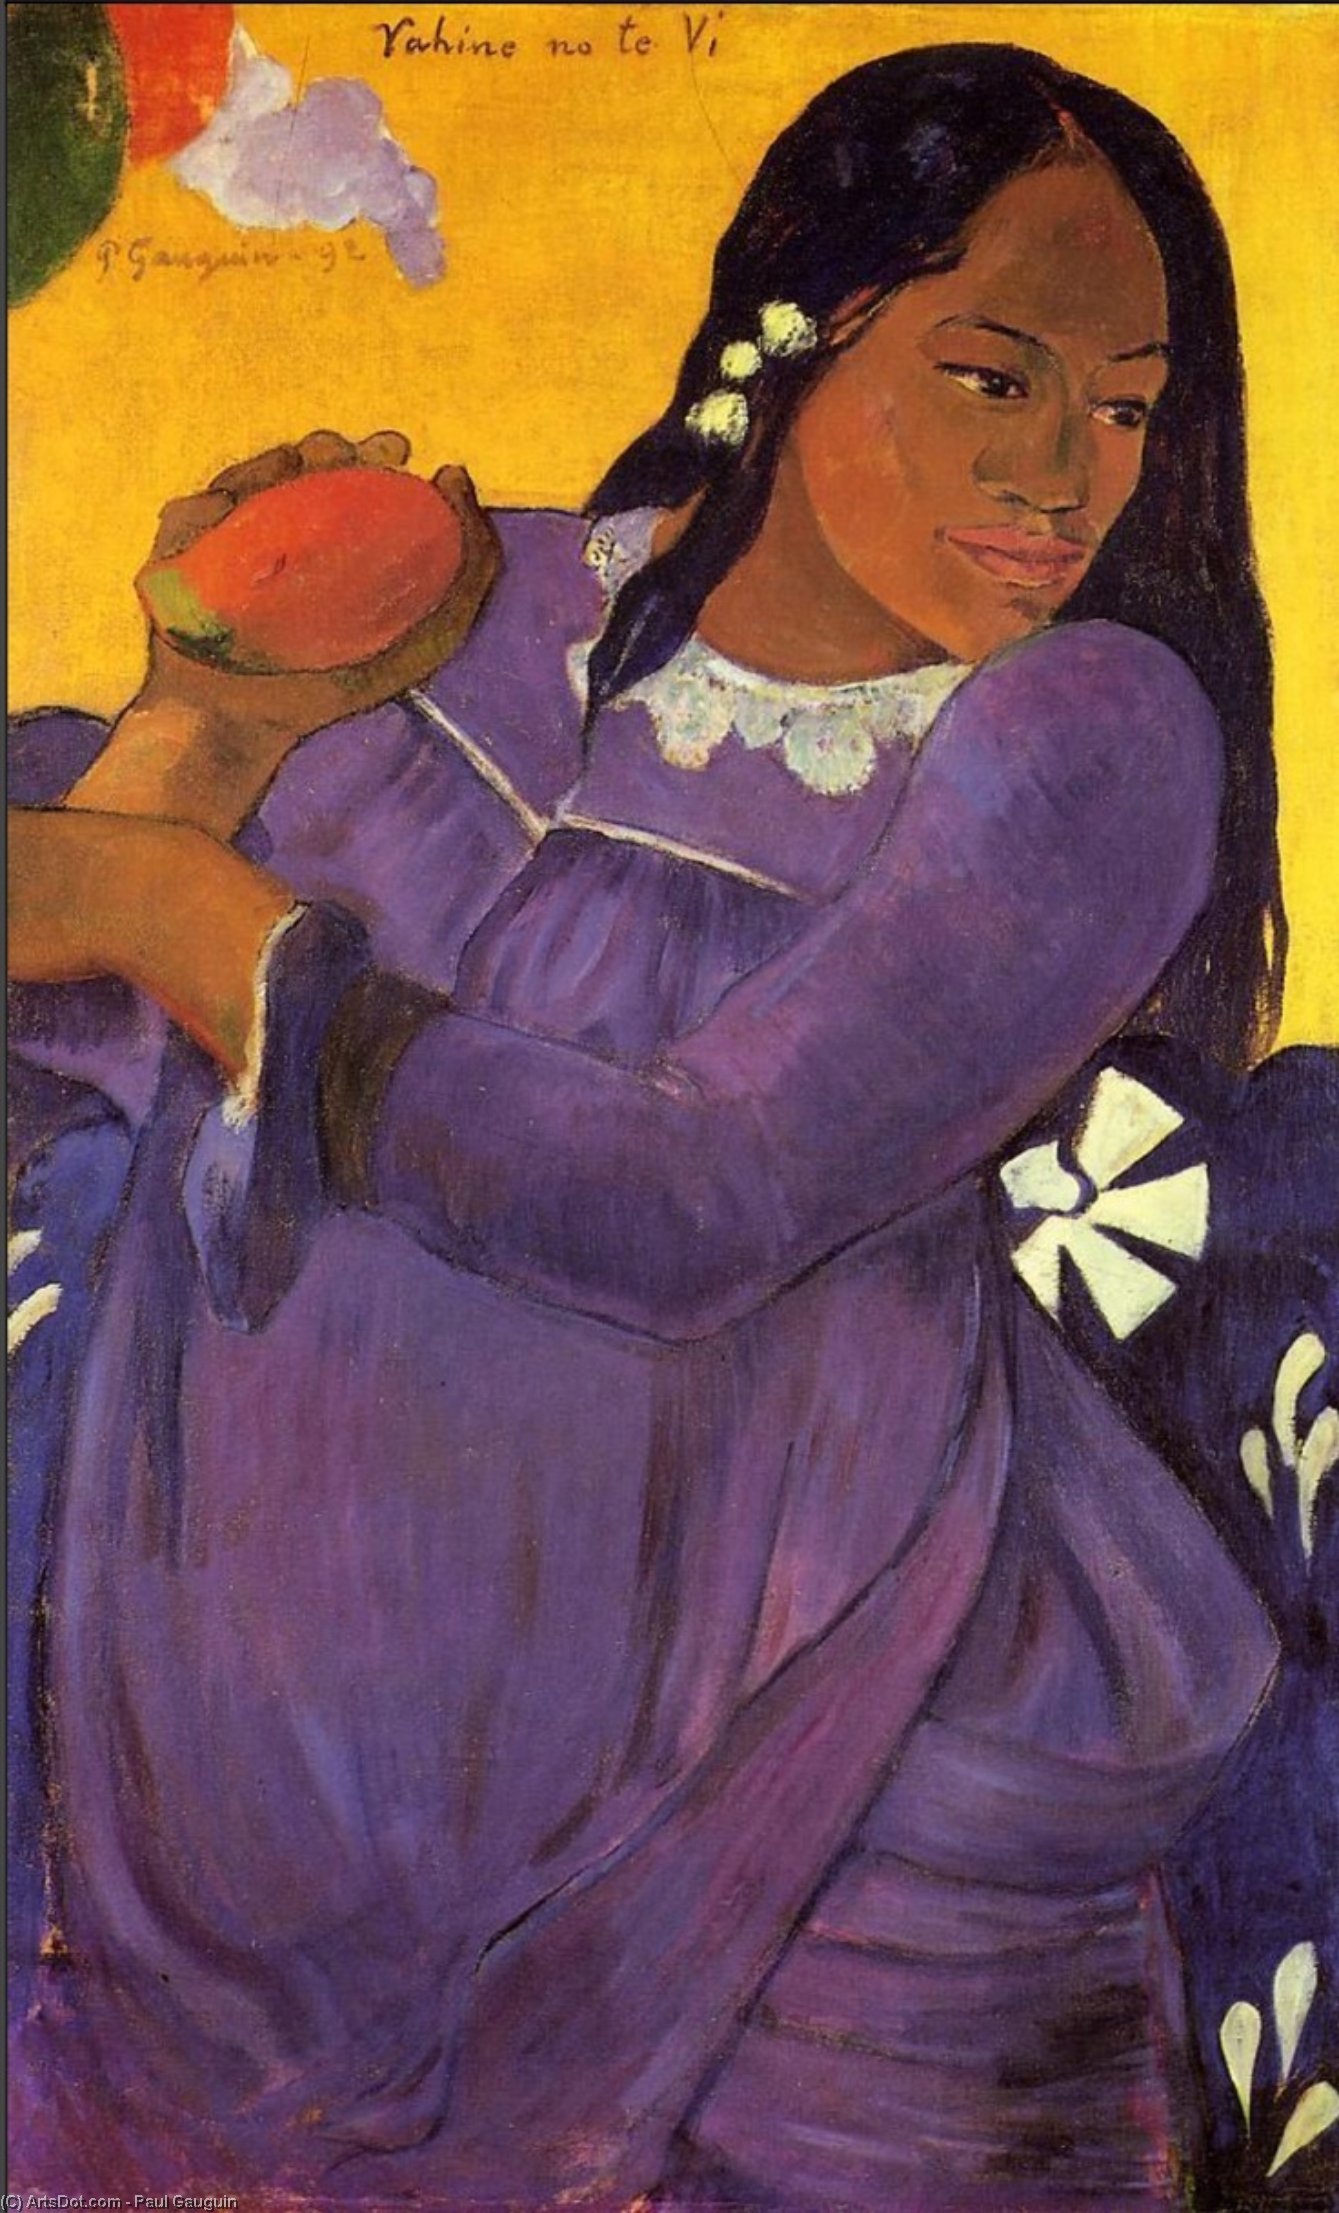 WikiOO.org - Encyclopedia of Fine Arts - Målning, konstverk Paul Gauguin - Woman with a Mango